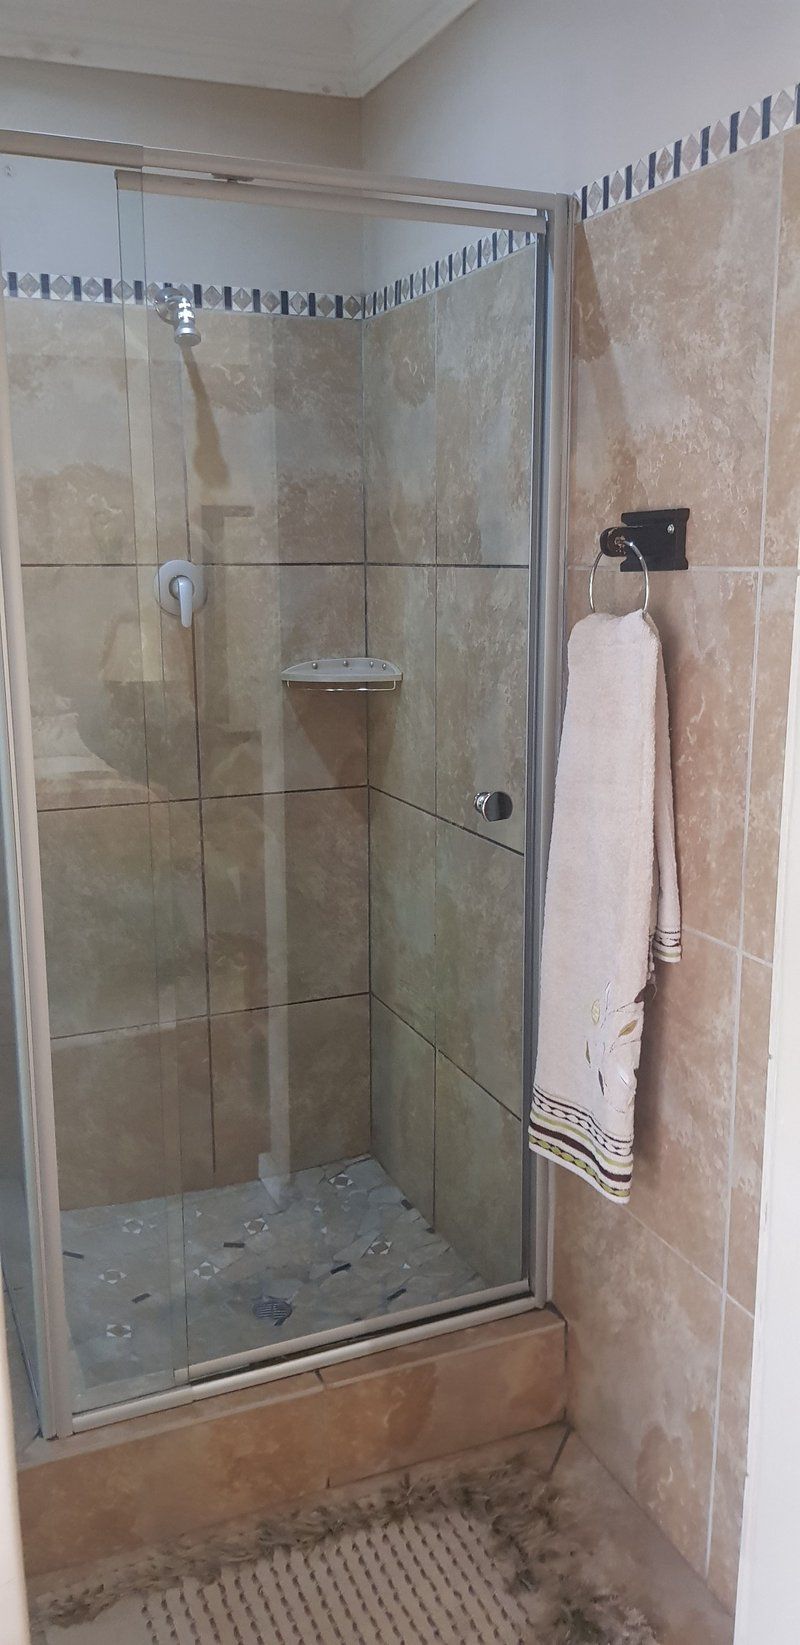 Liebencharm Guest House Rayton Gauteng Gauteng South Africa Unsaturated, Bathroom